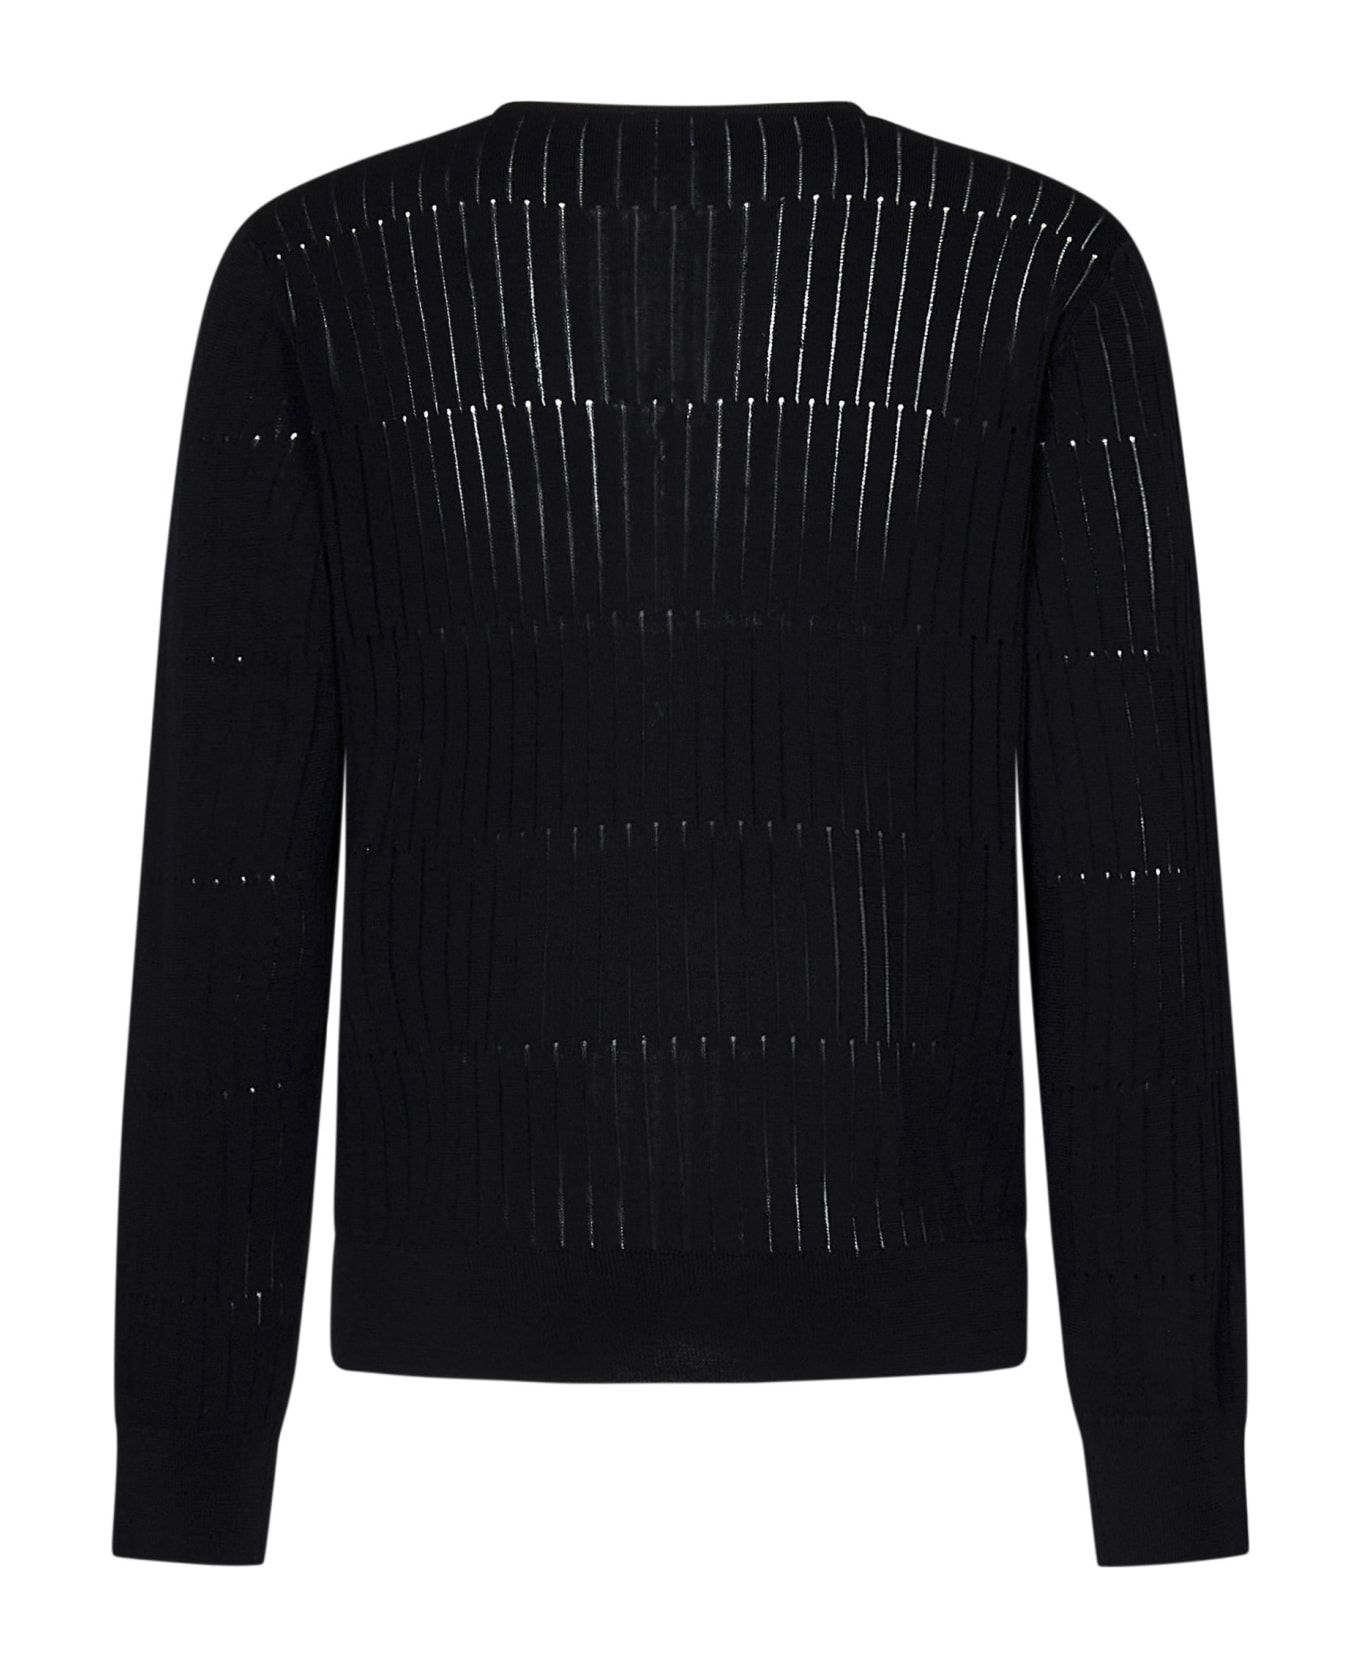 Emporio Armani Sweater - Black